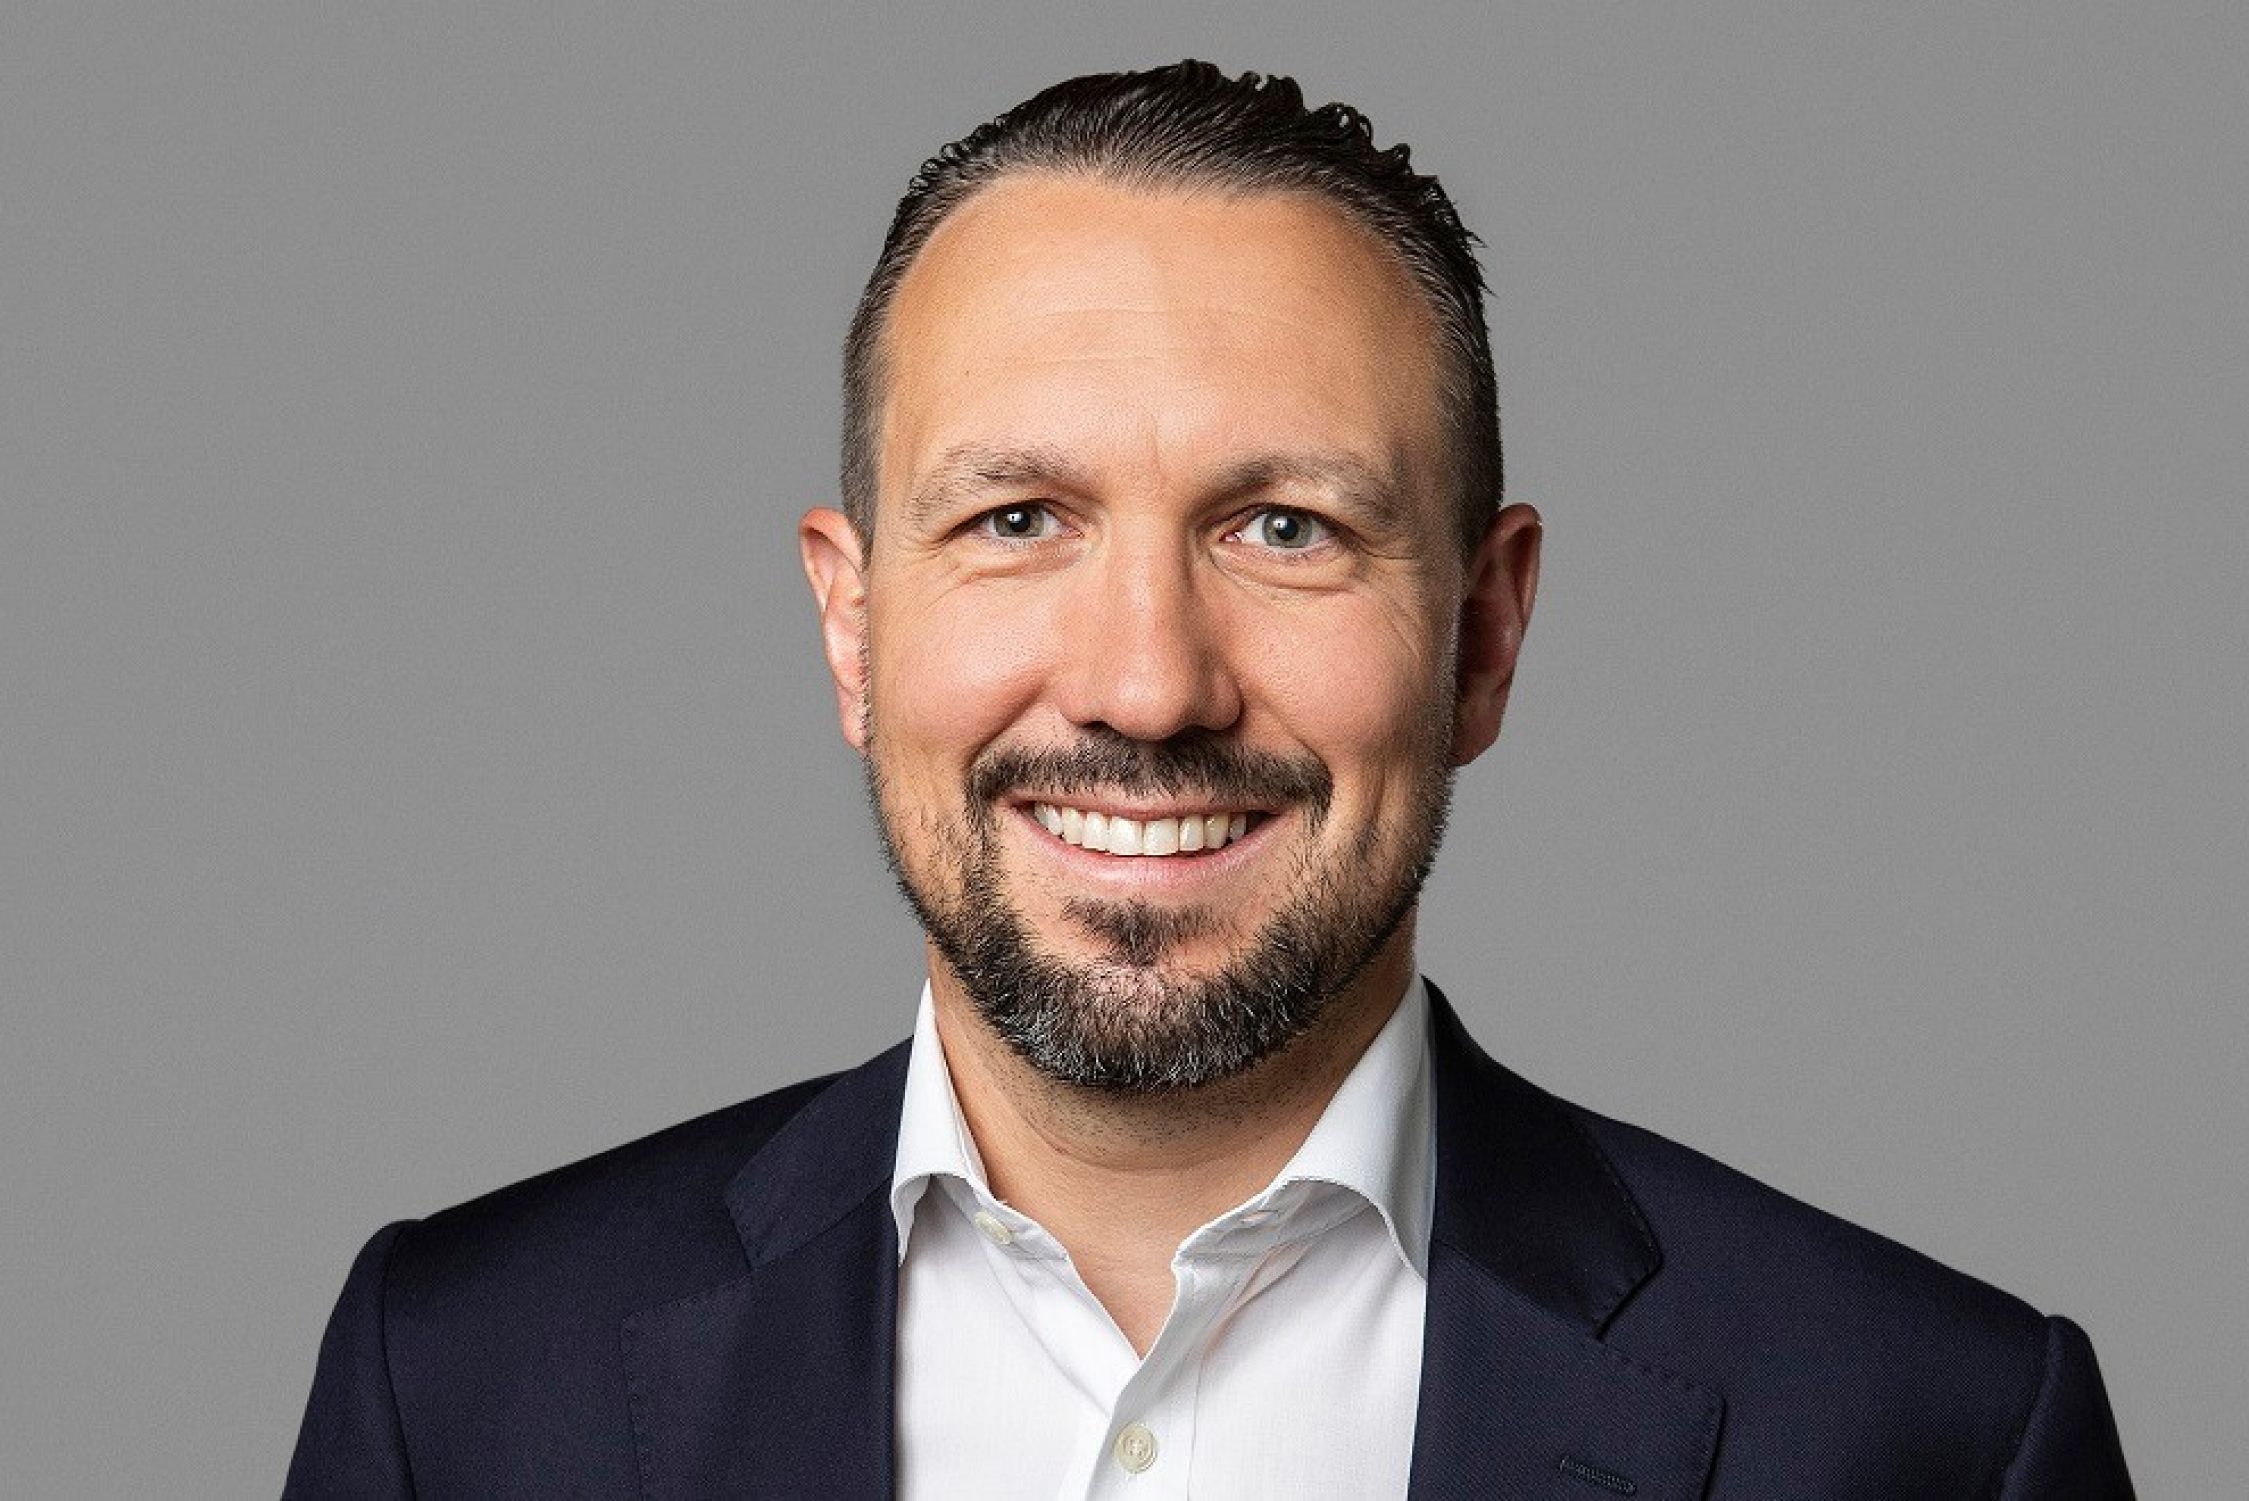 Jan Kundert übernimmt ab dem 1. August 2022 die Leitung des Kunden- und Marktmanagements und wird Mitglied der Geschäftsleitung von Helvetia Schweiz